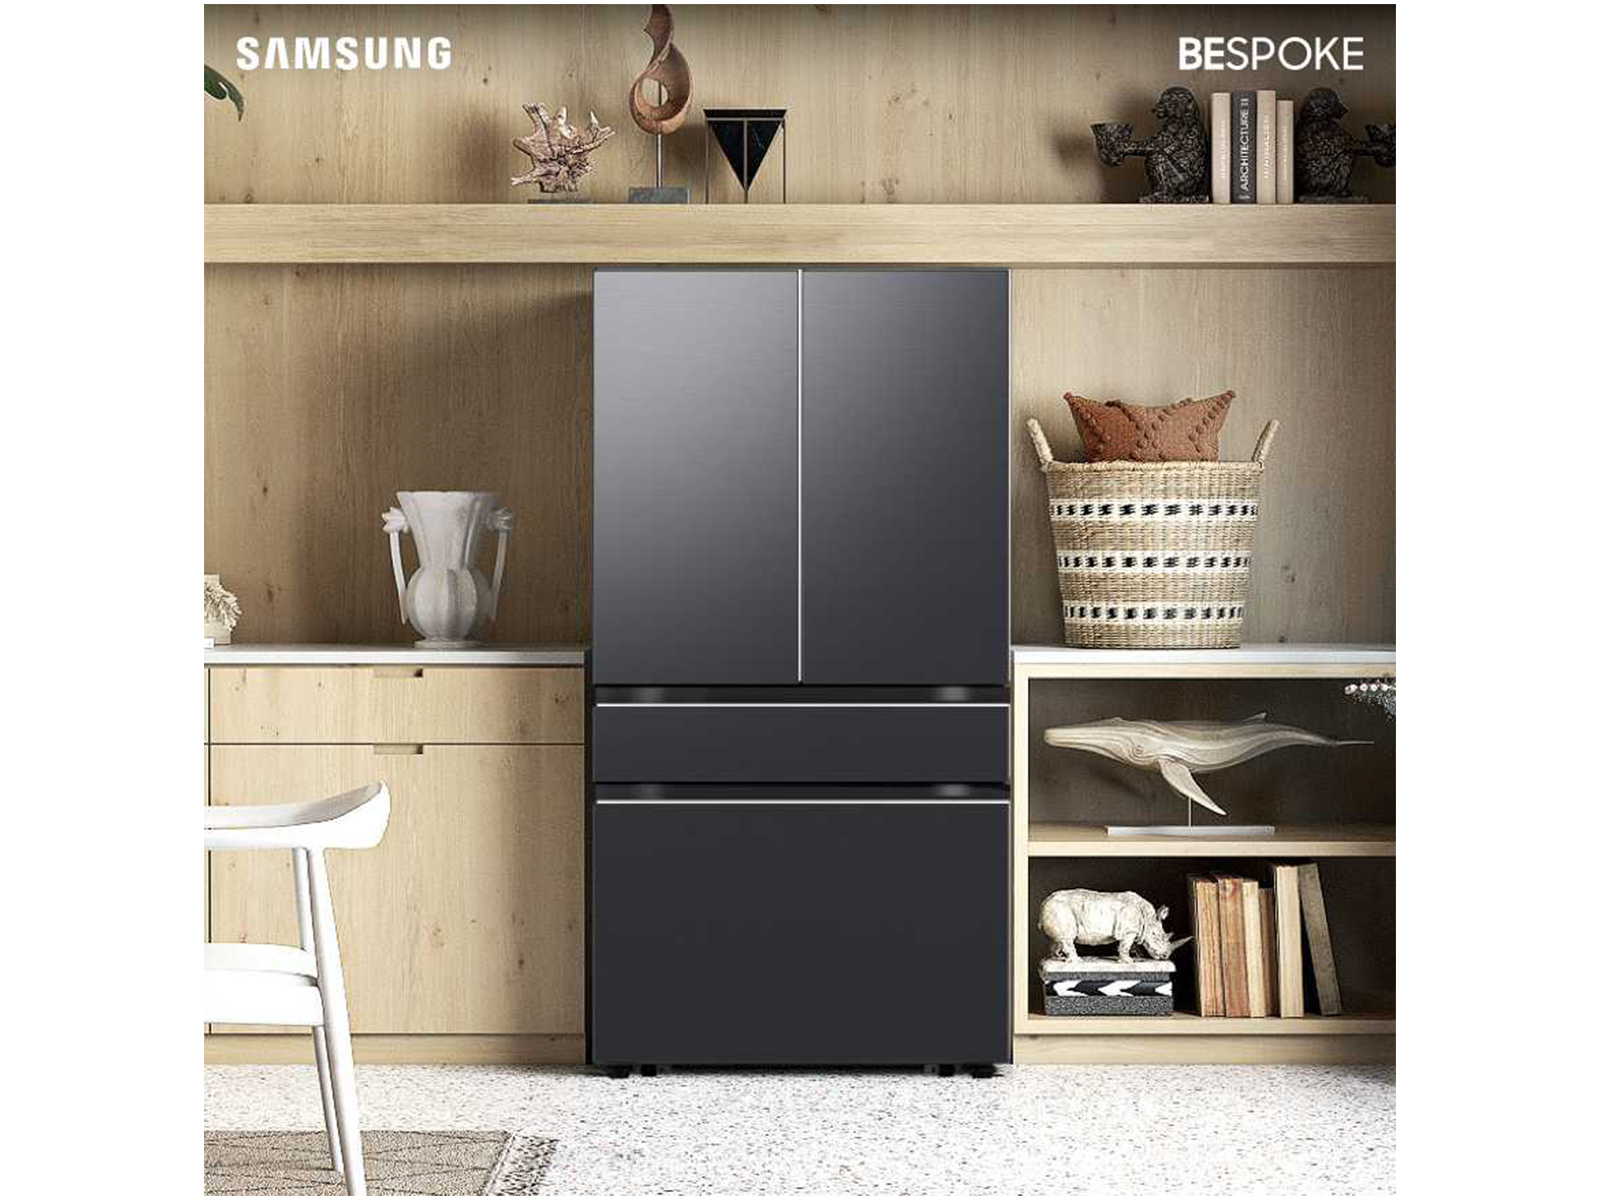 Bespoke 4-Door French Door Refrigerator (29 cu. ft.) with Customizable Door  Panel Colors and Beverage Center™ in Matte Black Steel Refrigerators -  BNDL-1646083165115